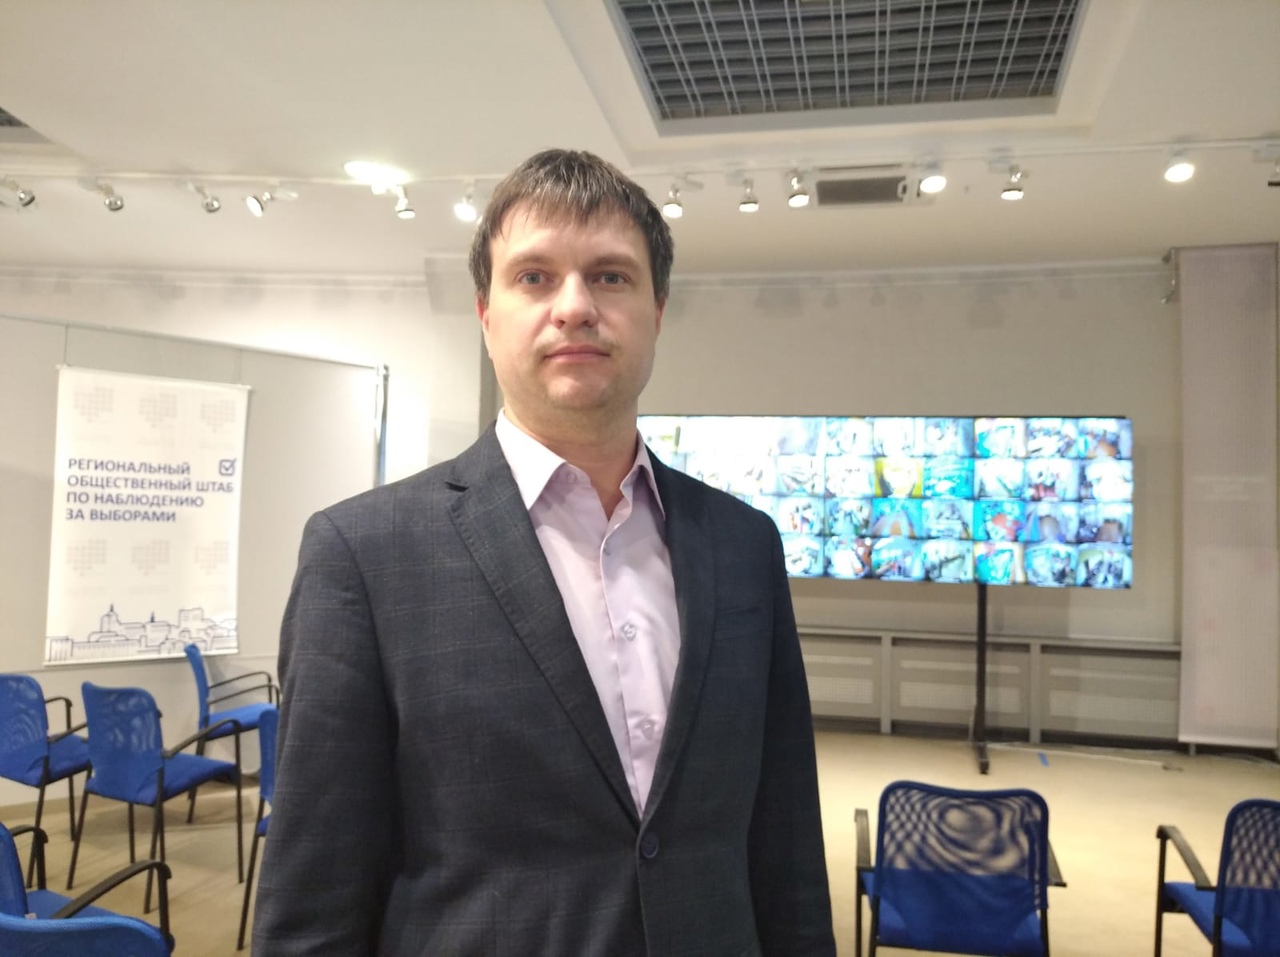 Денис Пестунов: Благодаря поддержке Алексея Островского удалось воплотить в жизнь уникальный масштабный проект